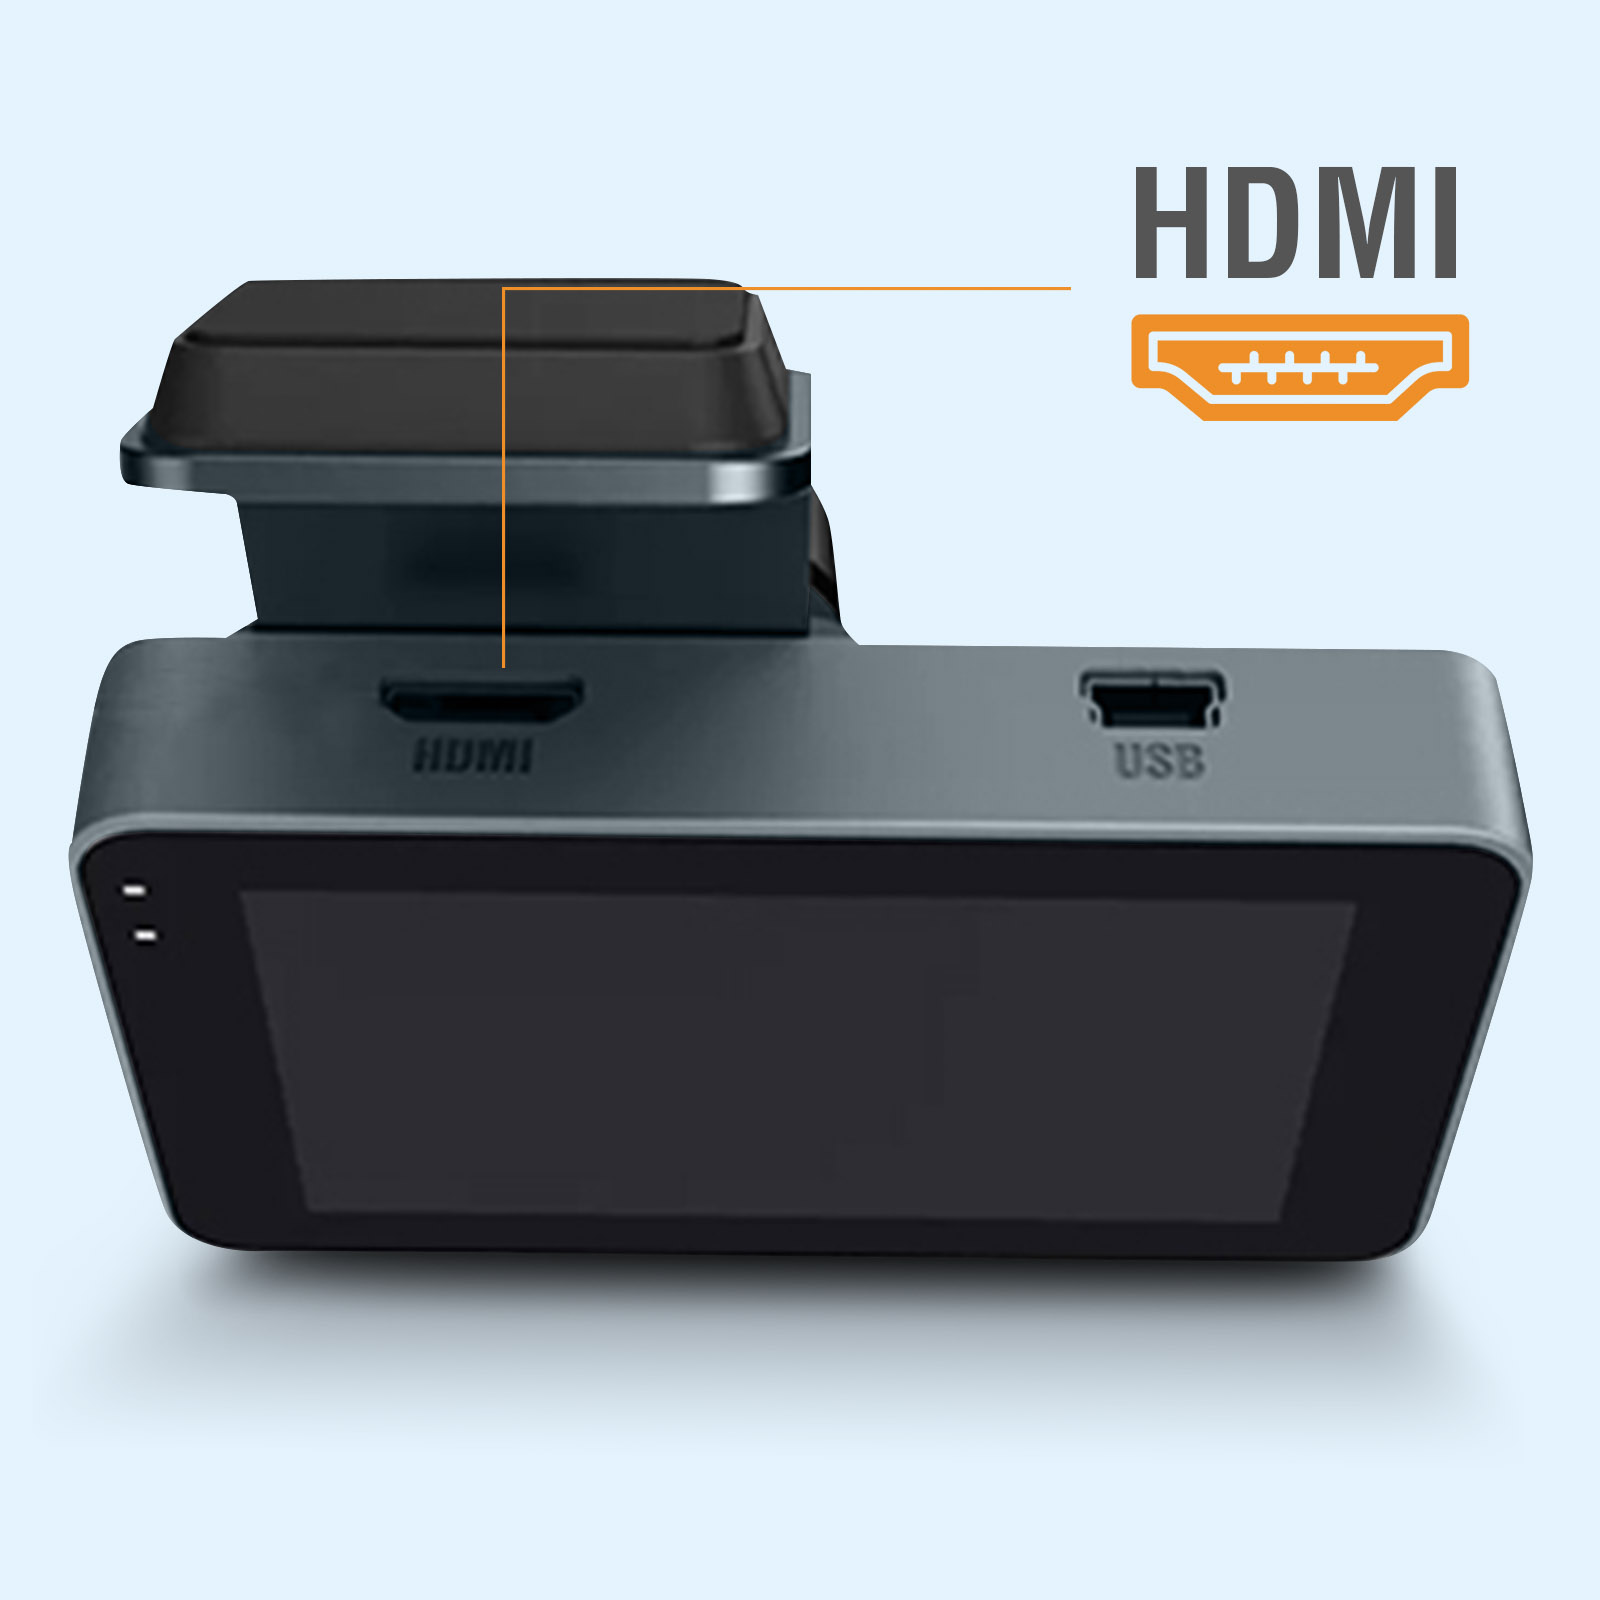 Caméra Embarquée QHD 1440p, Caméra Voiture avec Micro et Port mini HDMI,  Fonction Bluetooth - Français